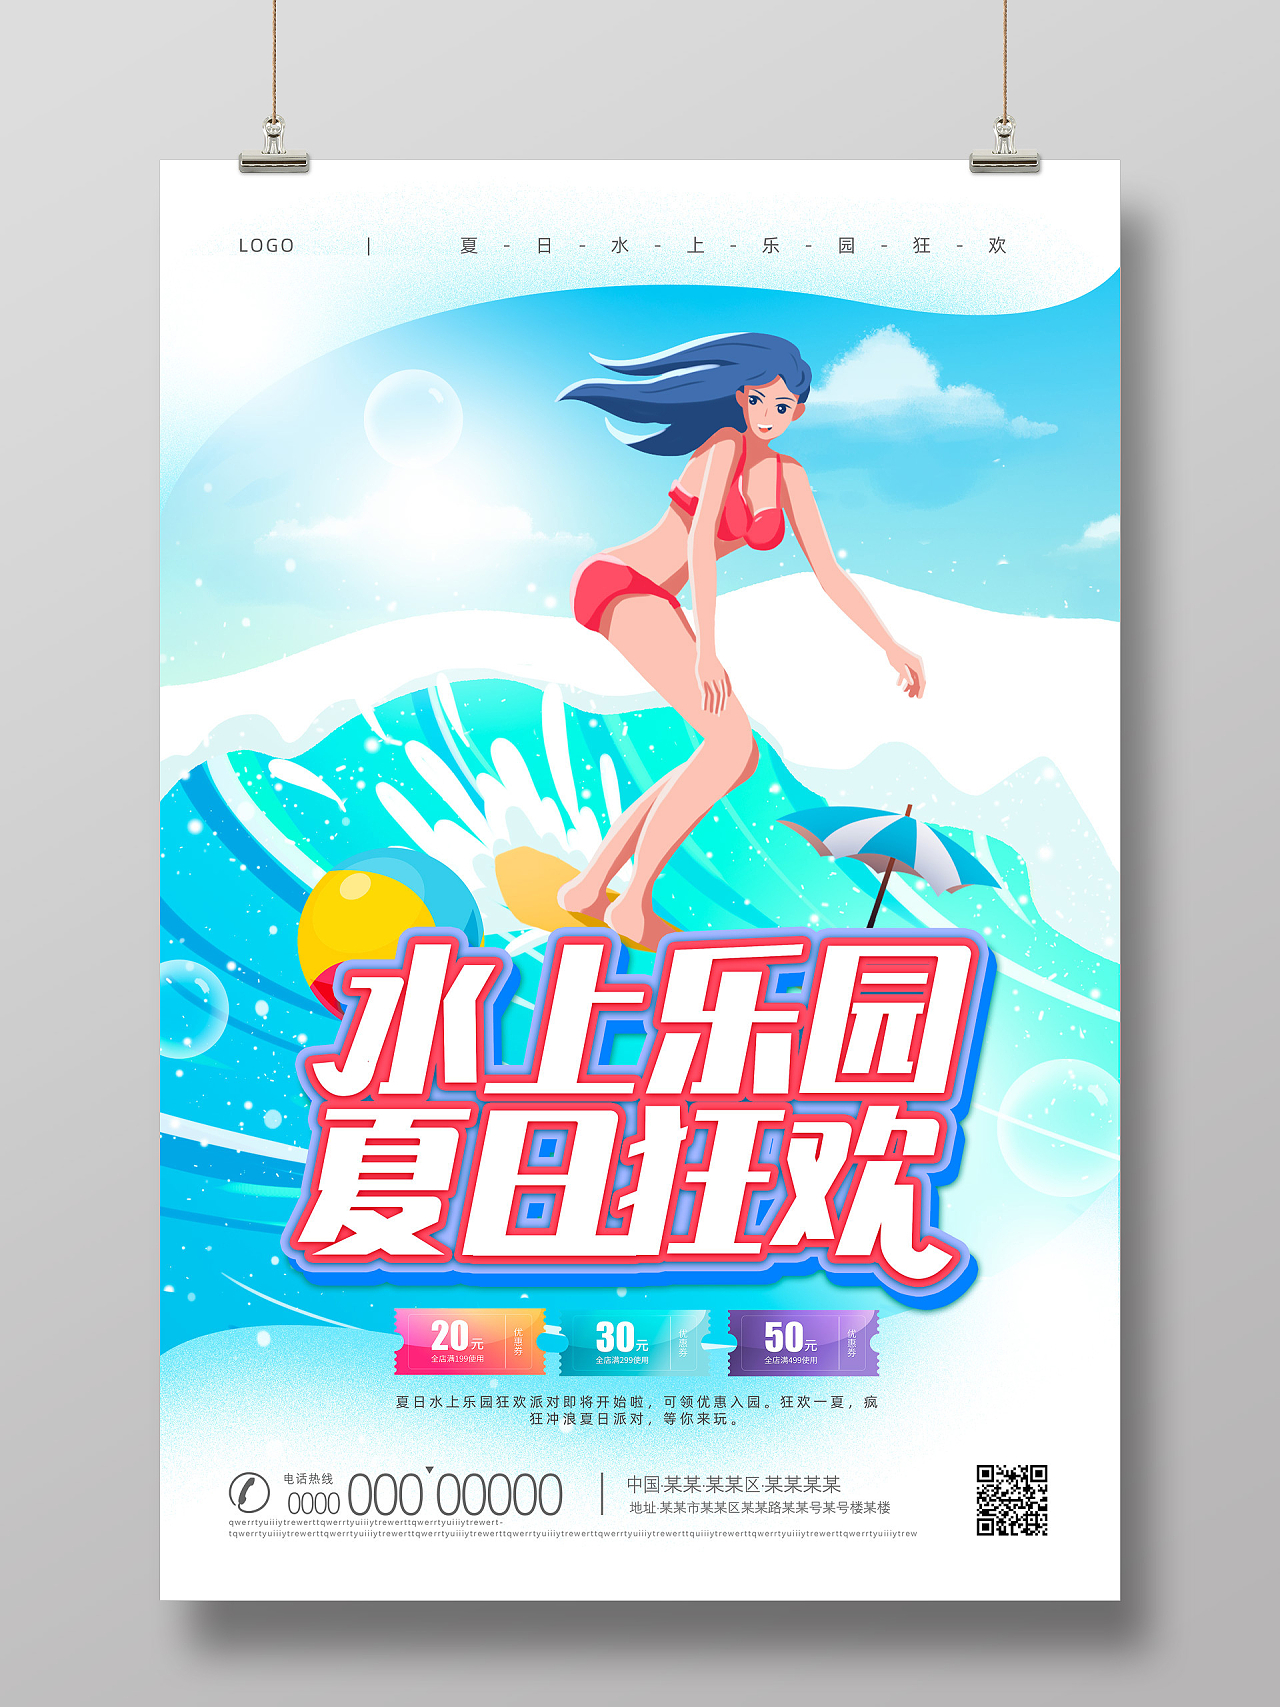 蓝色手绘插画冲浪夏日狂欢水上乐园海报